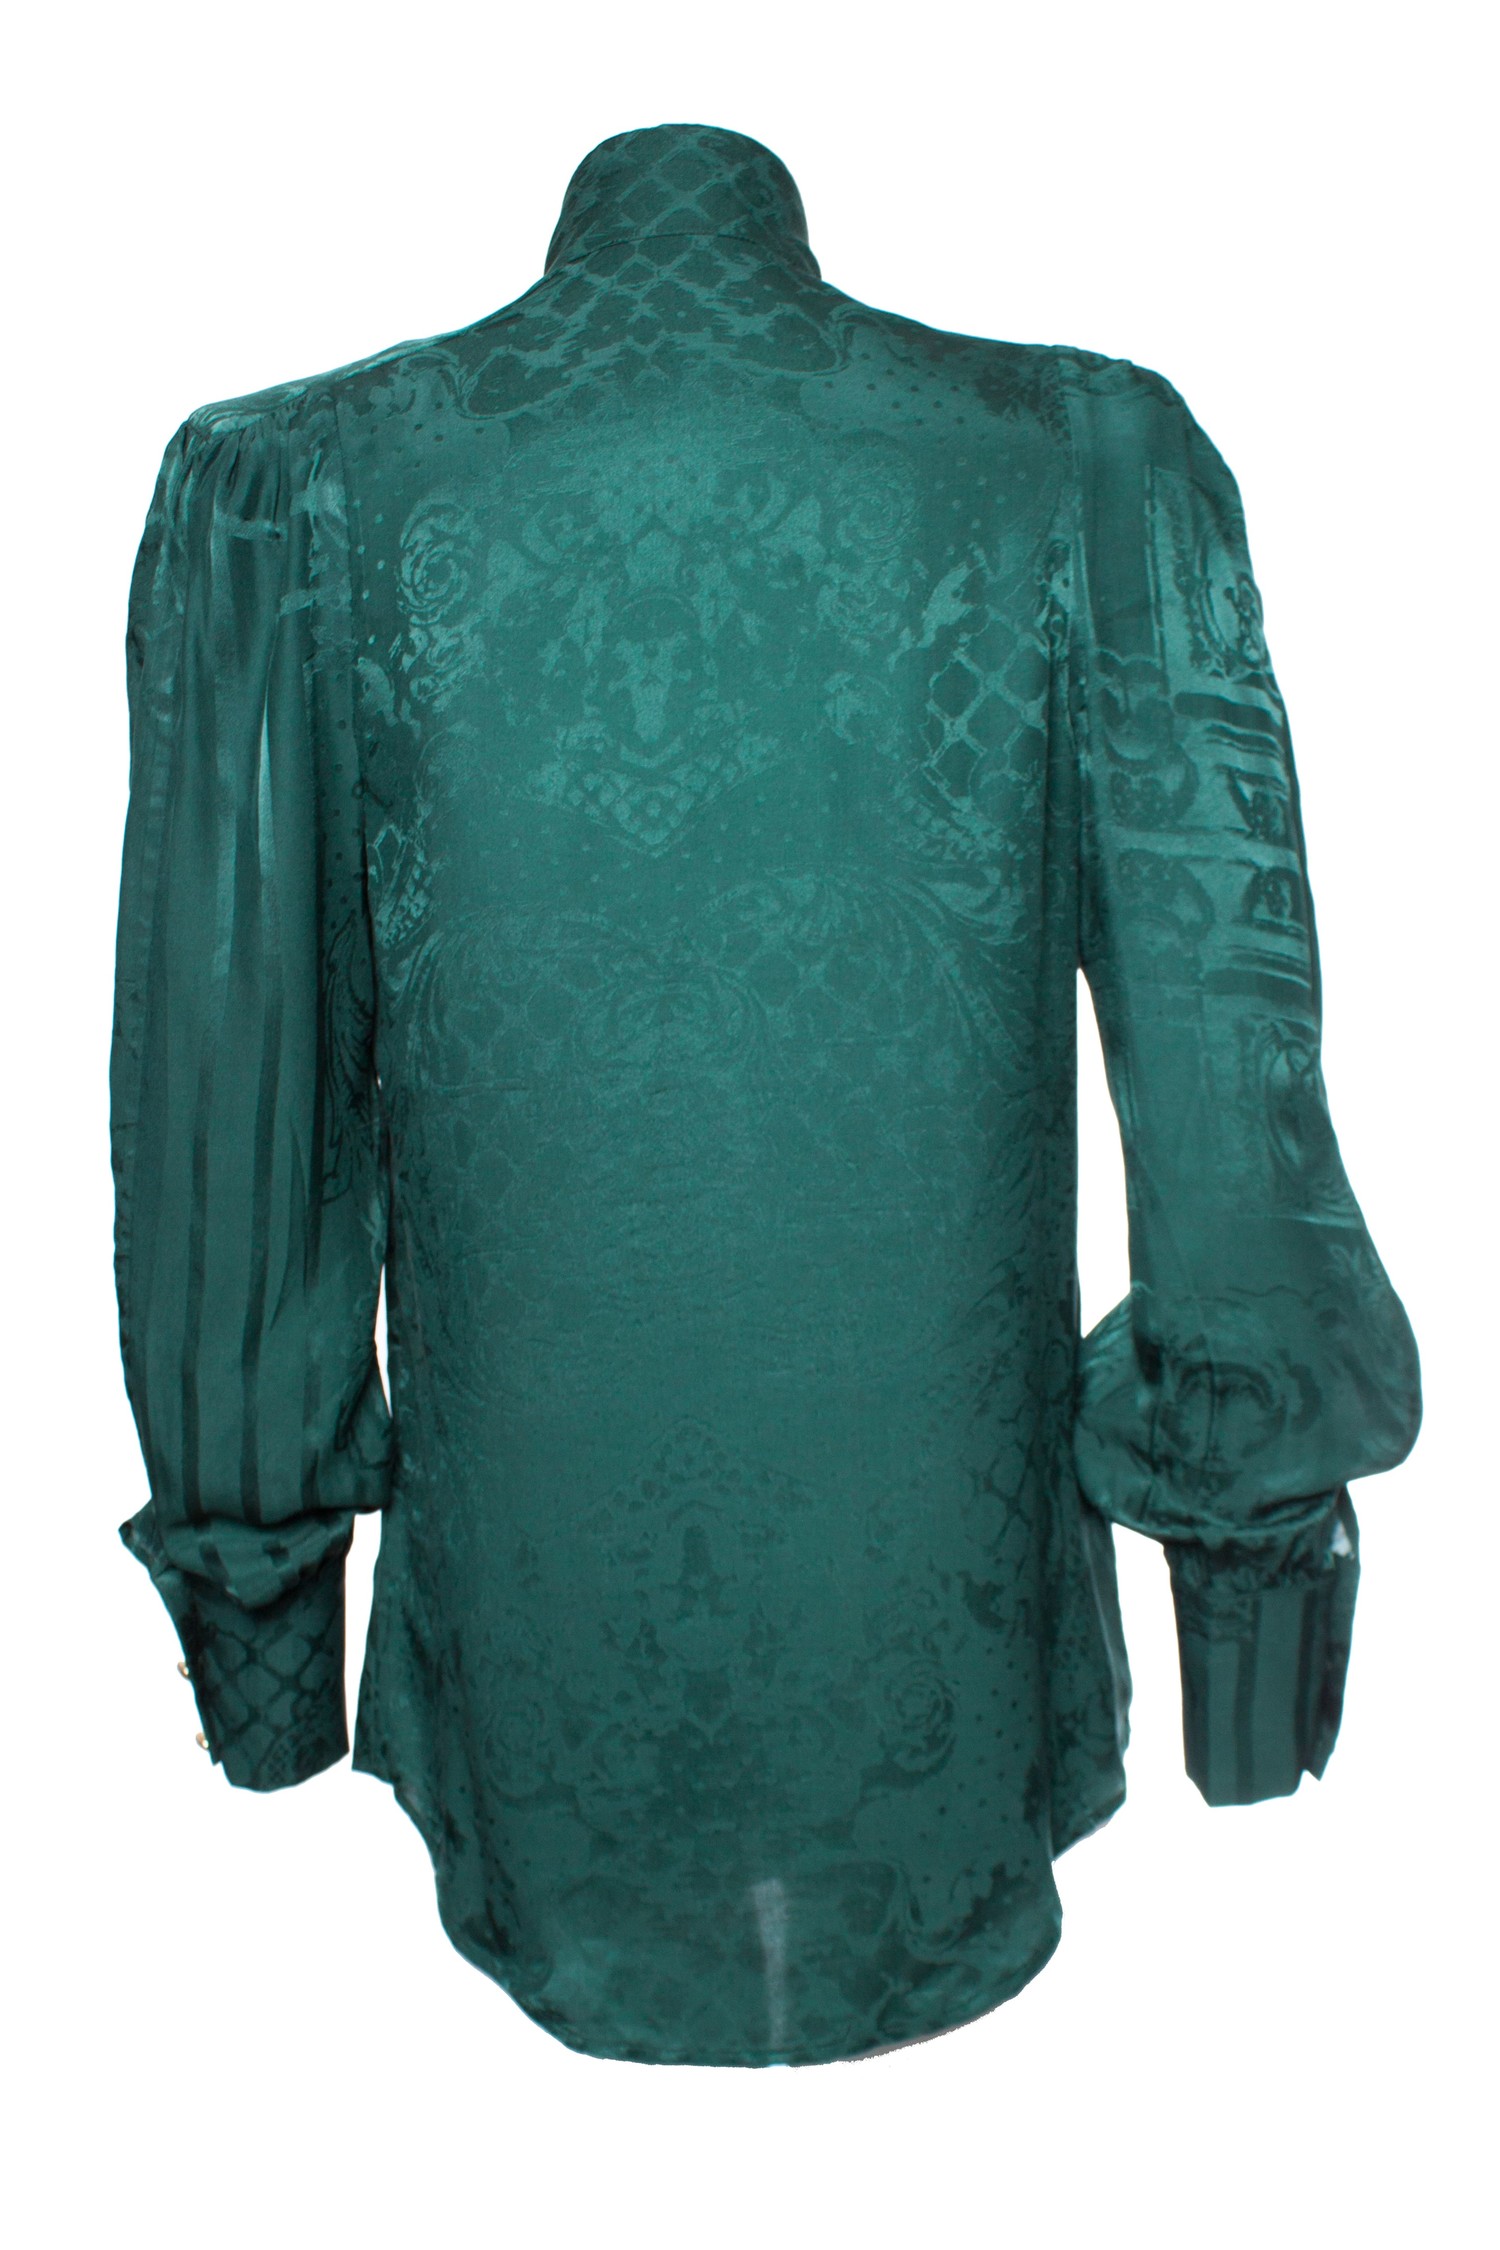 Ook geestelijke gezondheid telex Balmain for H&M, Zijden blouse in groen - Unique Designer Pieces